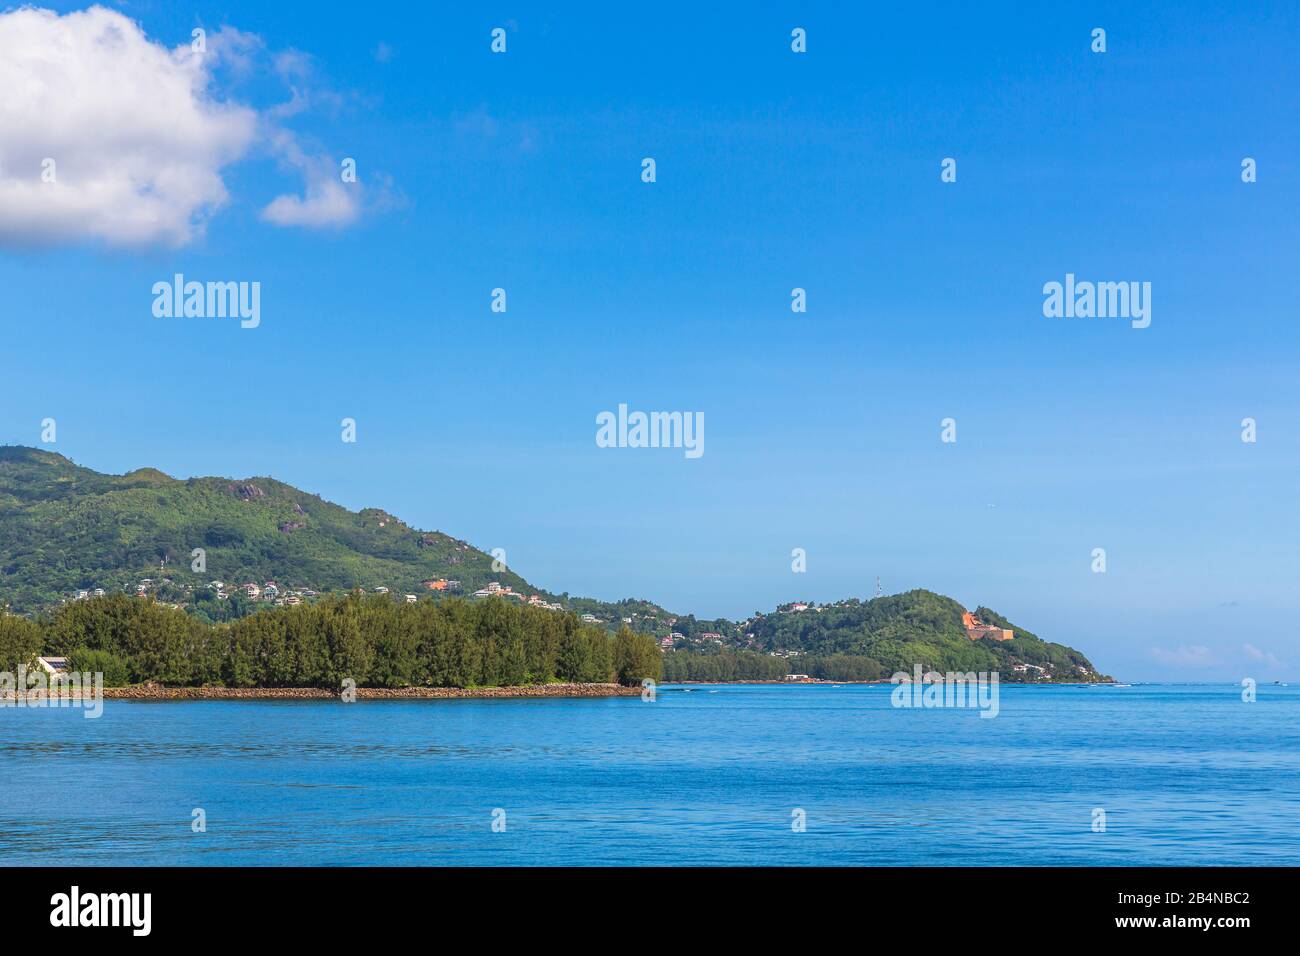 Insel Mahe, Seychellen, Indischer Ozean, Afrika Foto Stock